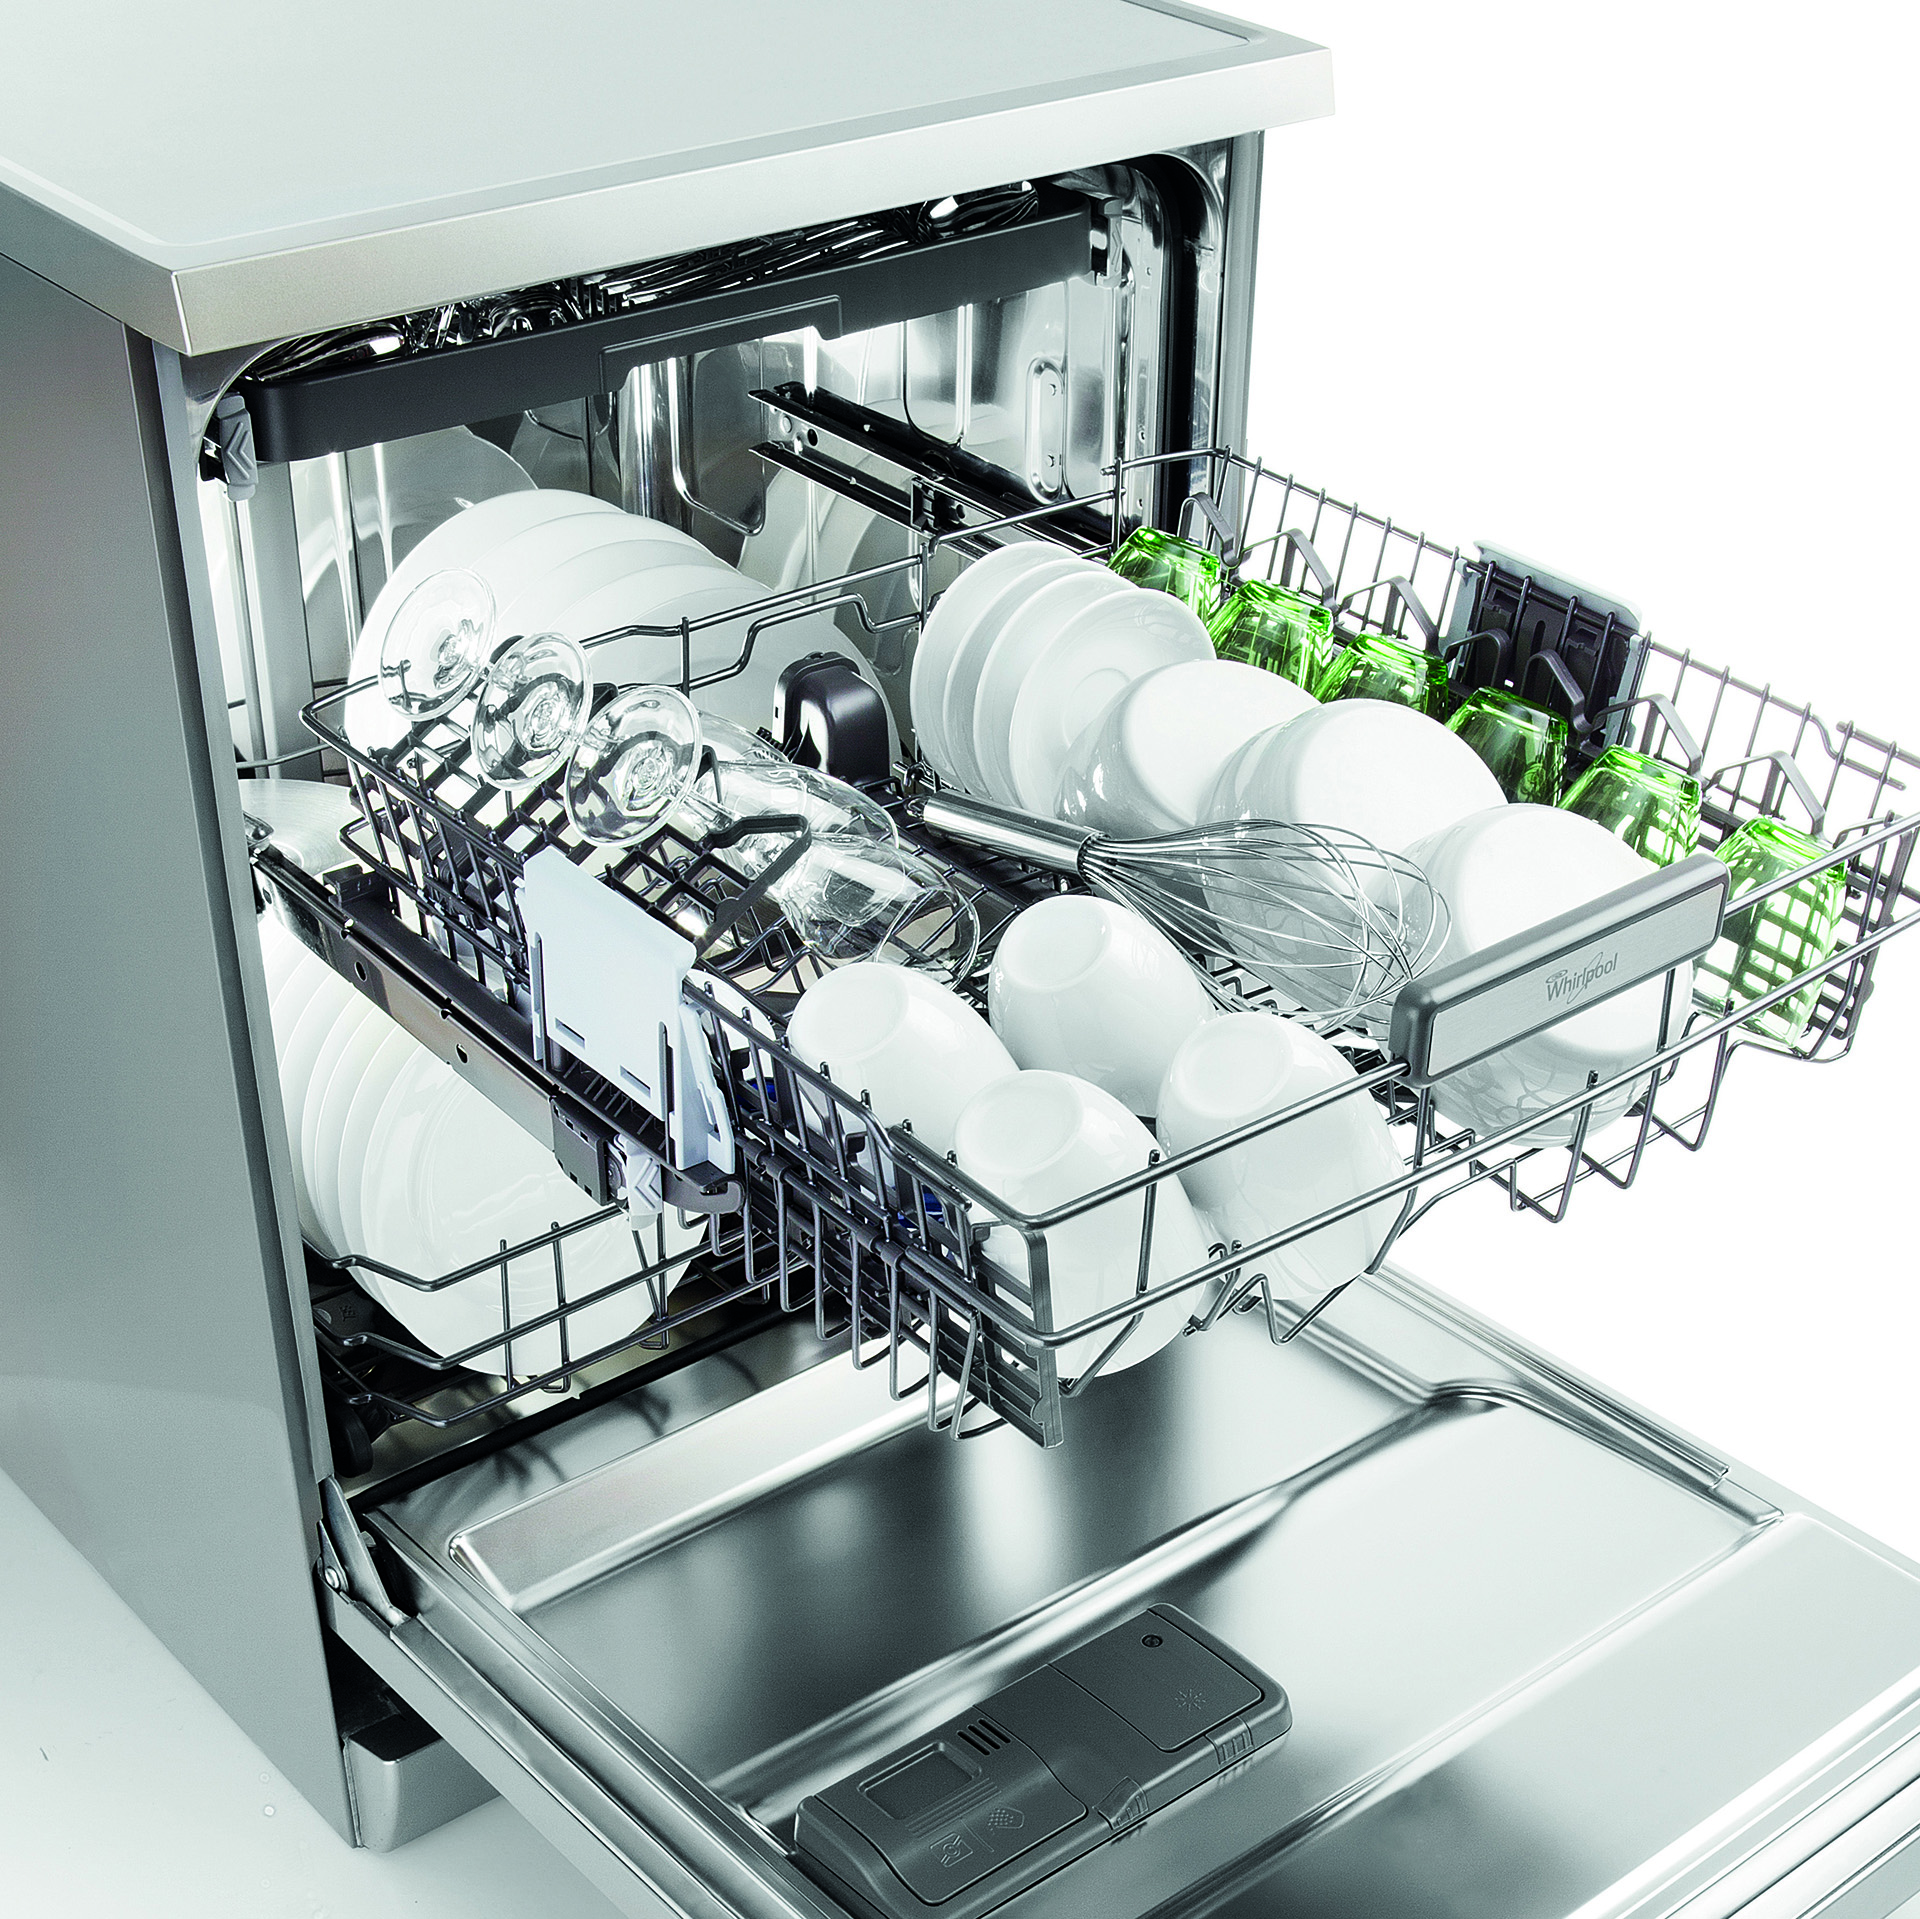 Какие посудомоечные машины хорошие по качеству. Ginzzu dc281. Whirlpool 6 sense посудомоечная машина. Посудомоечная машина Ginzzu dc281. Посудомоечная машина Whirlpool Aquasteam 6.